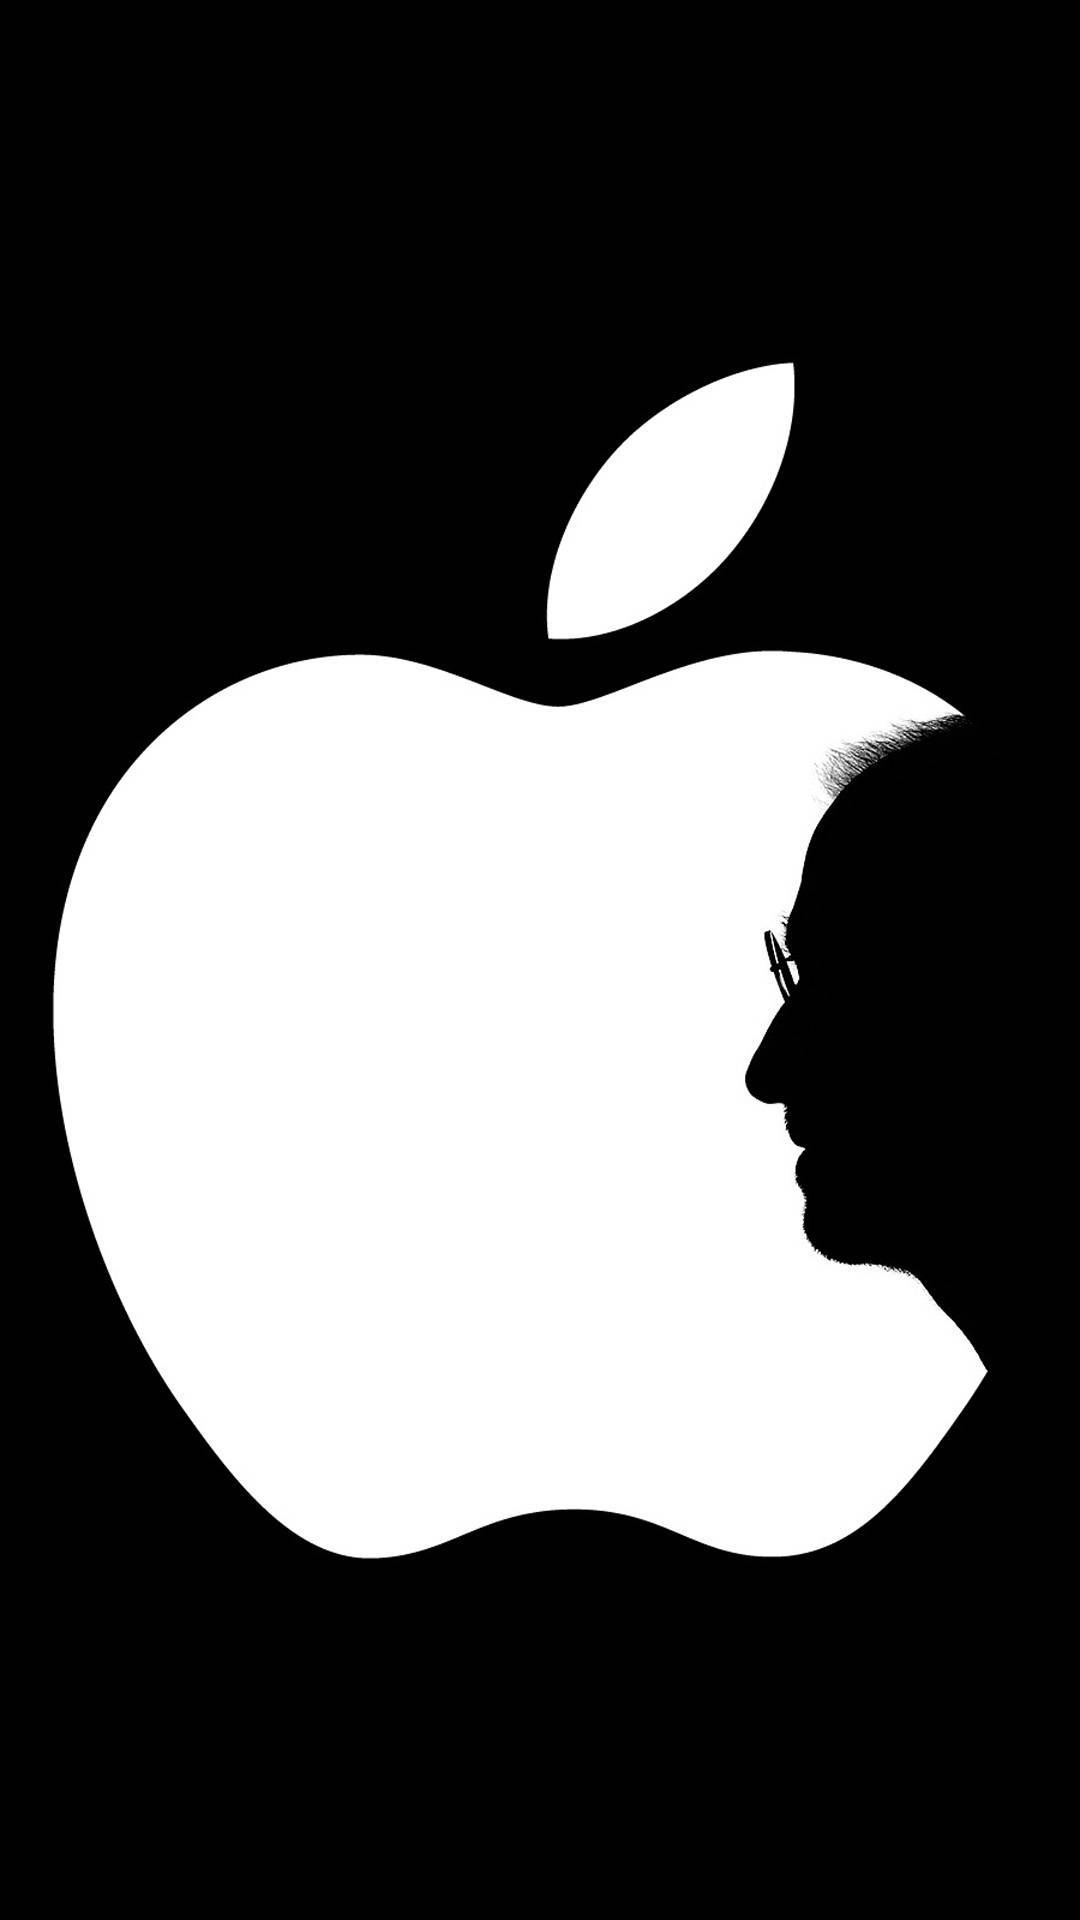 steve jobs holding apple